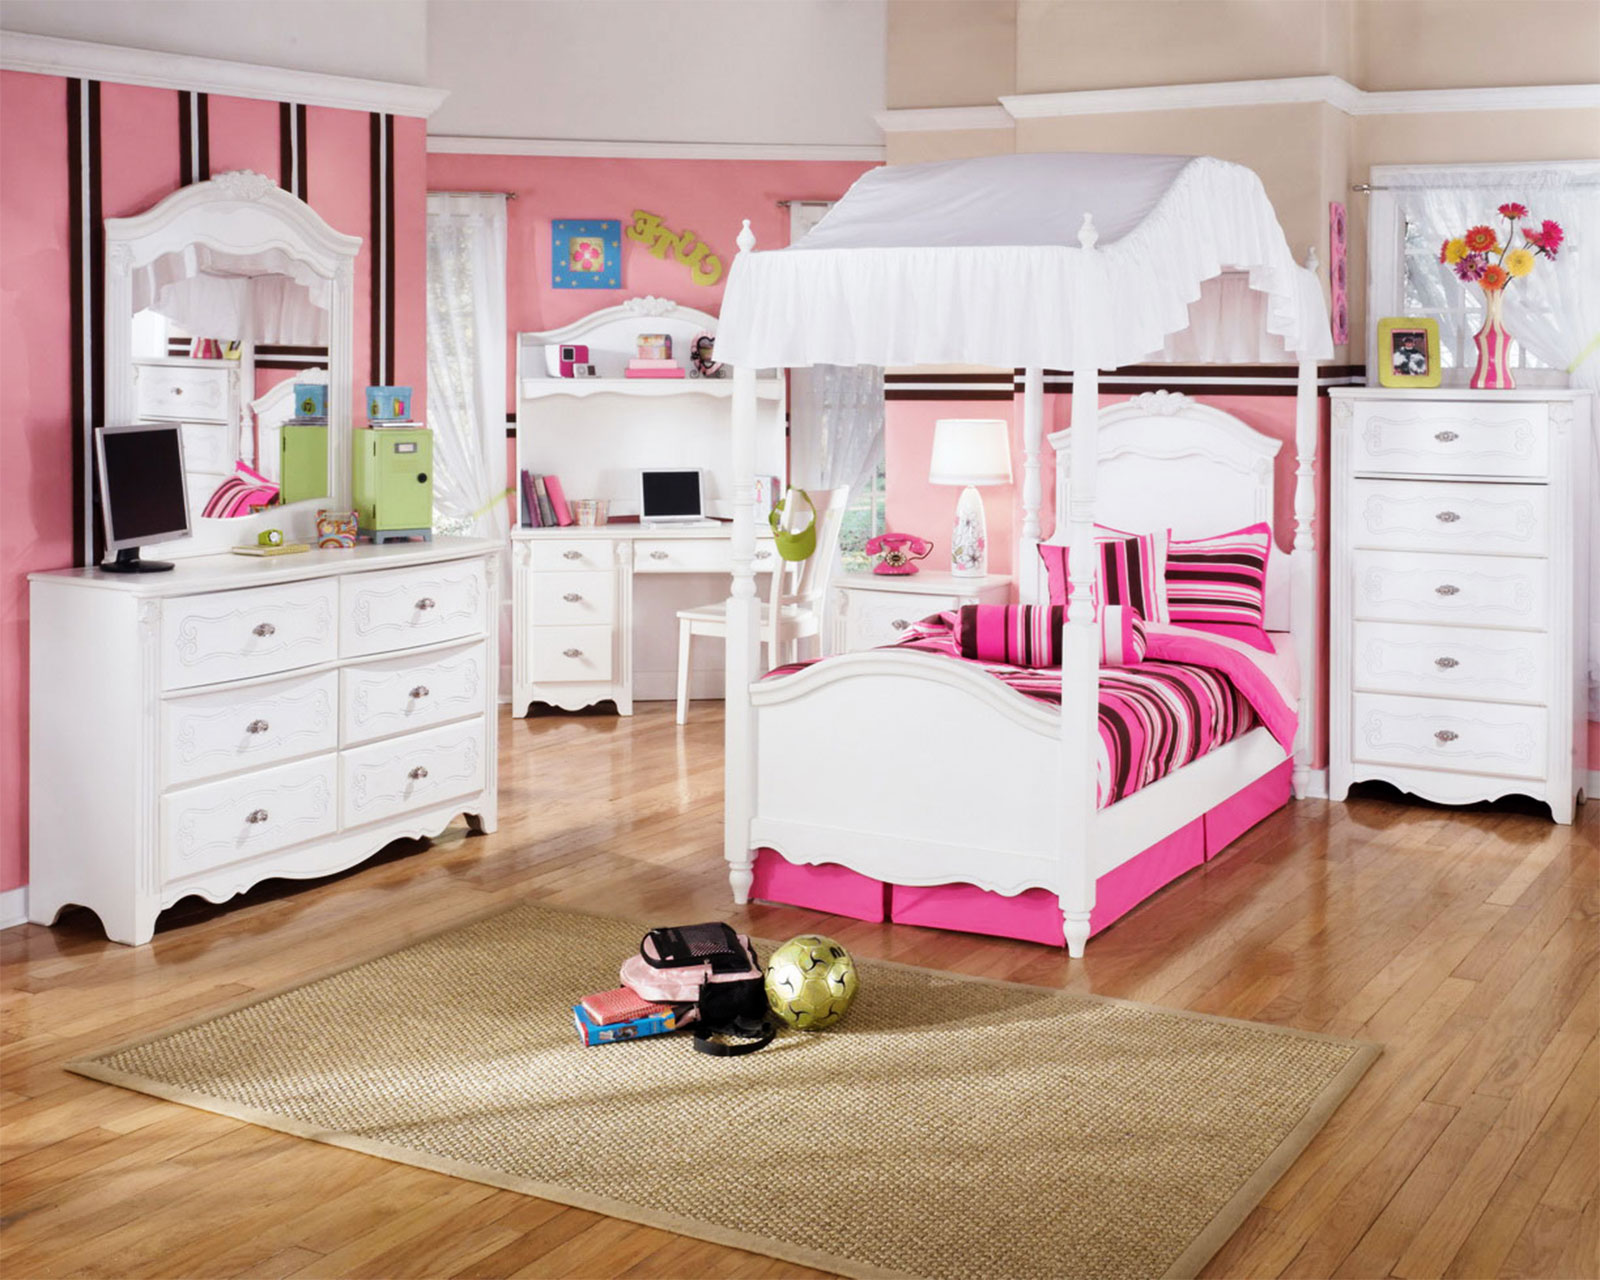 baby girls bedroom furniture